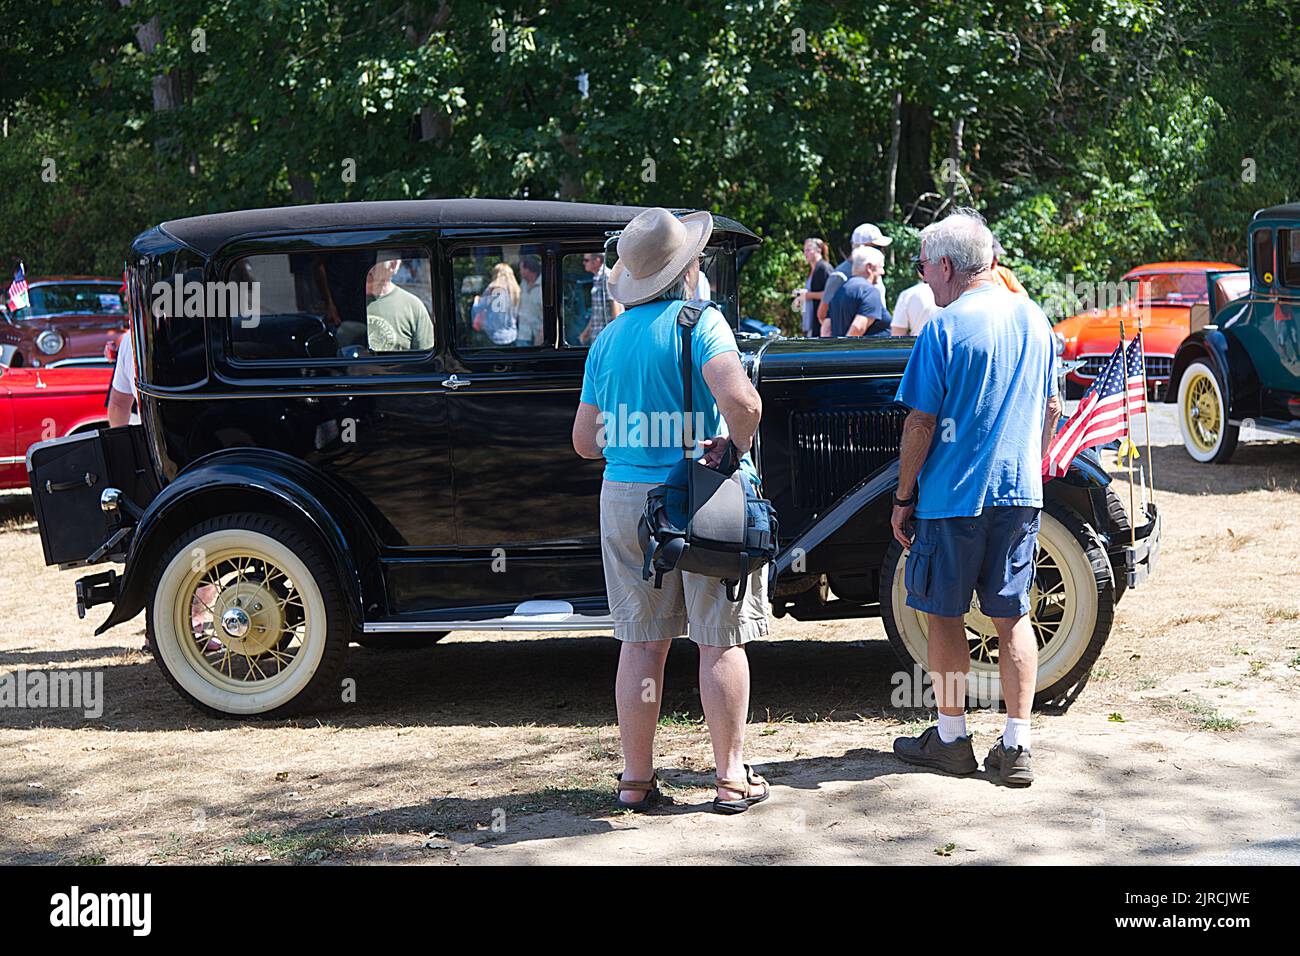 Mirando a un Ford antiguo restaurado en un desfile de autos antiguos y espectáculo en Dennis, Massachusetts, Cape Cod, Estados Unidos Foto de stock